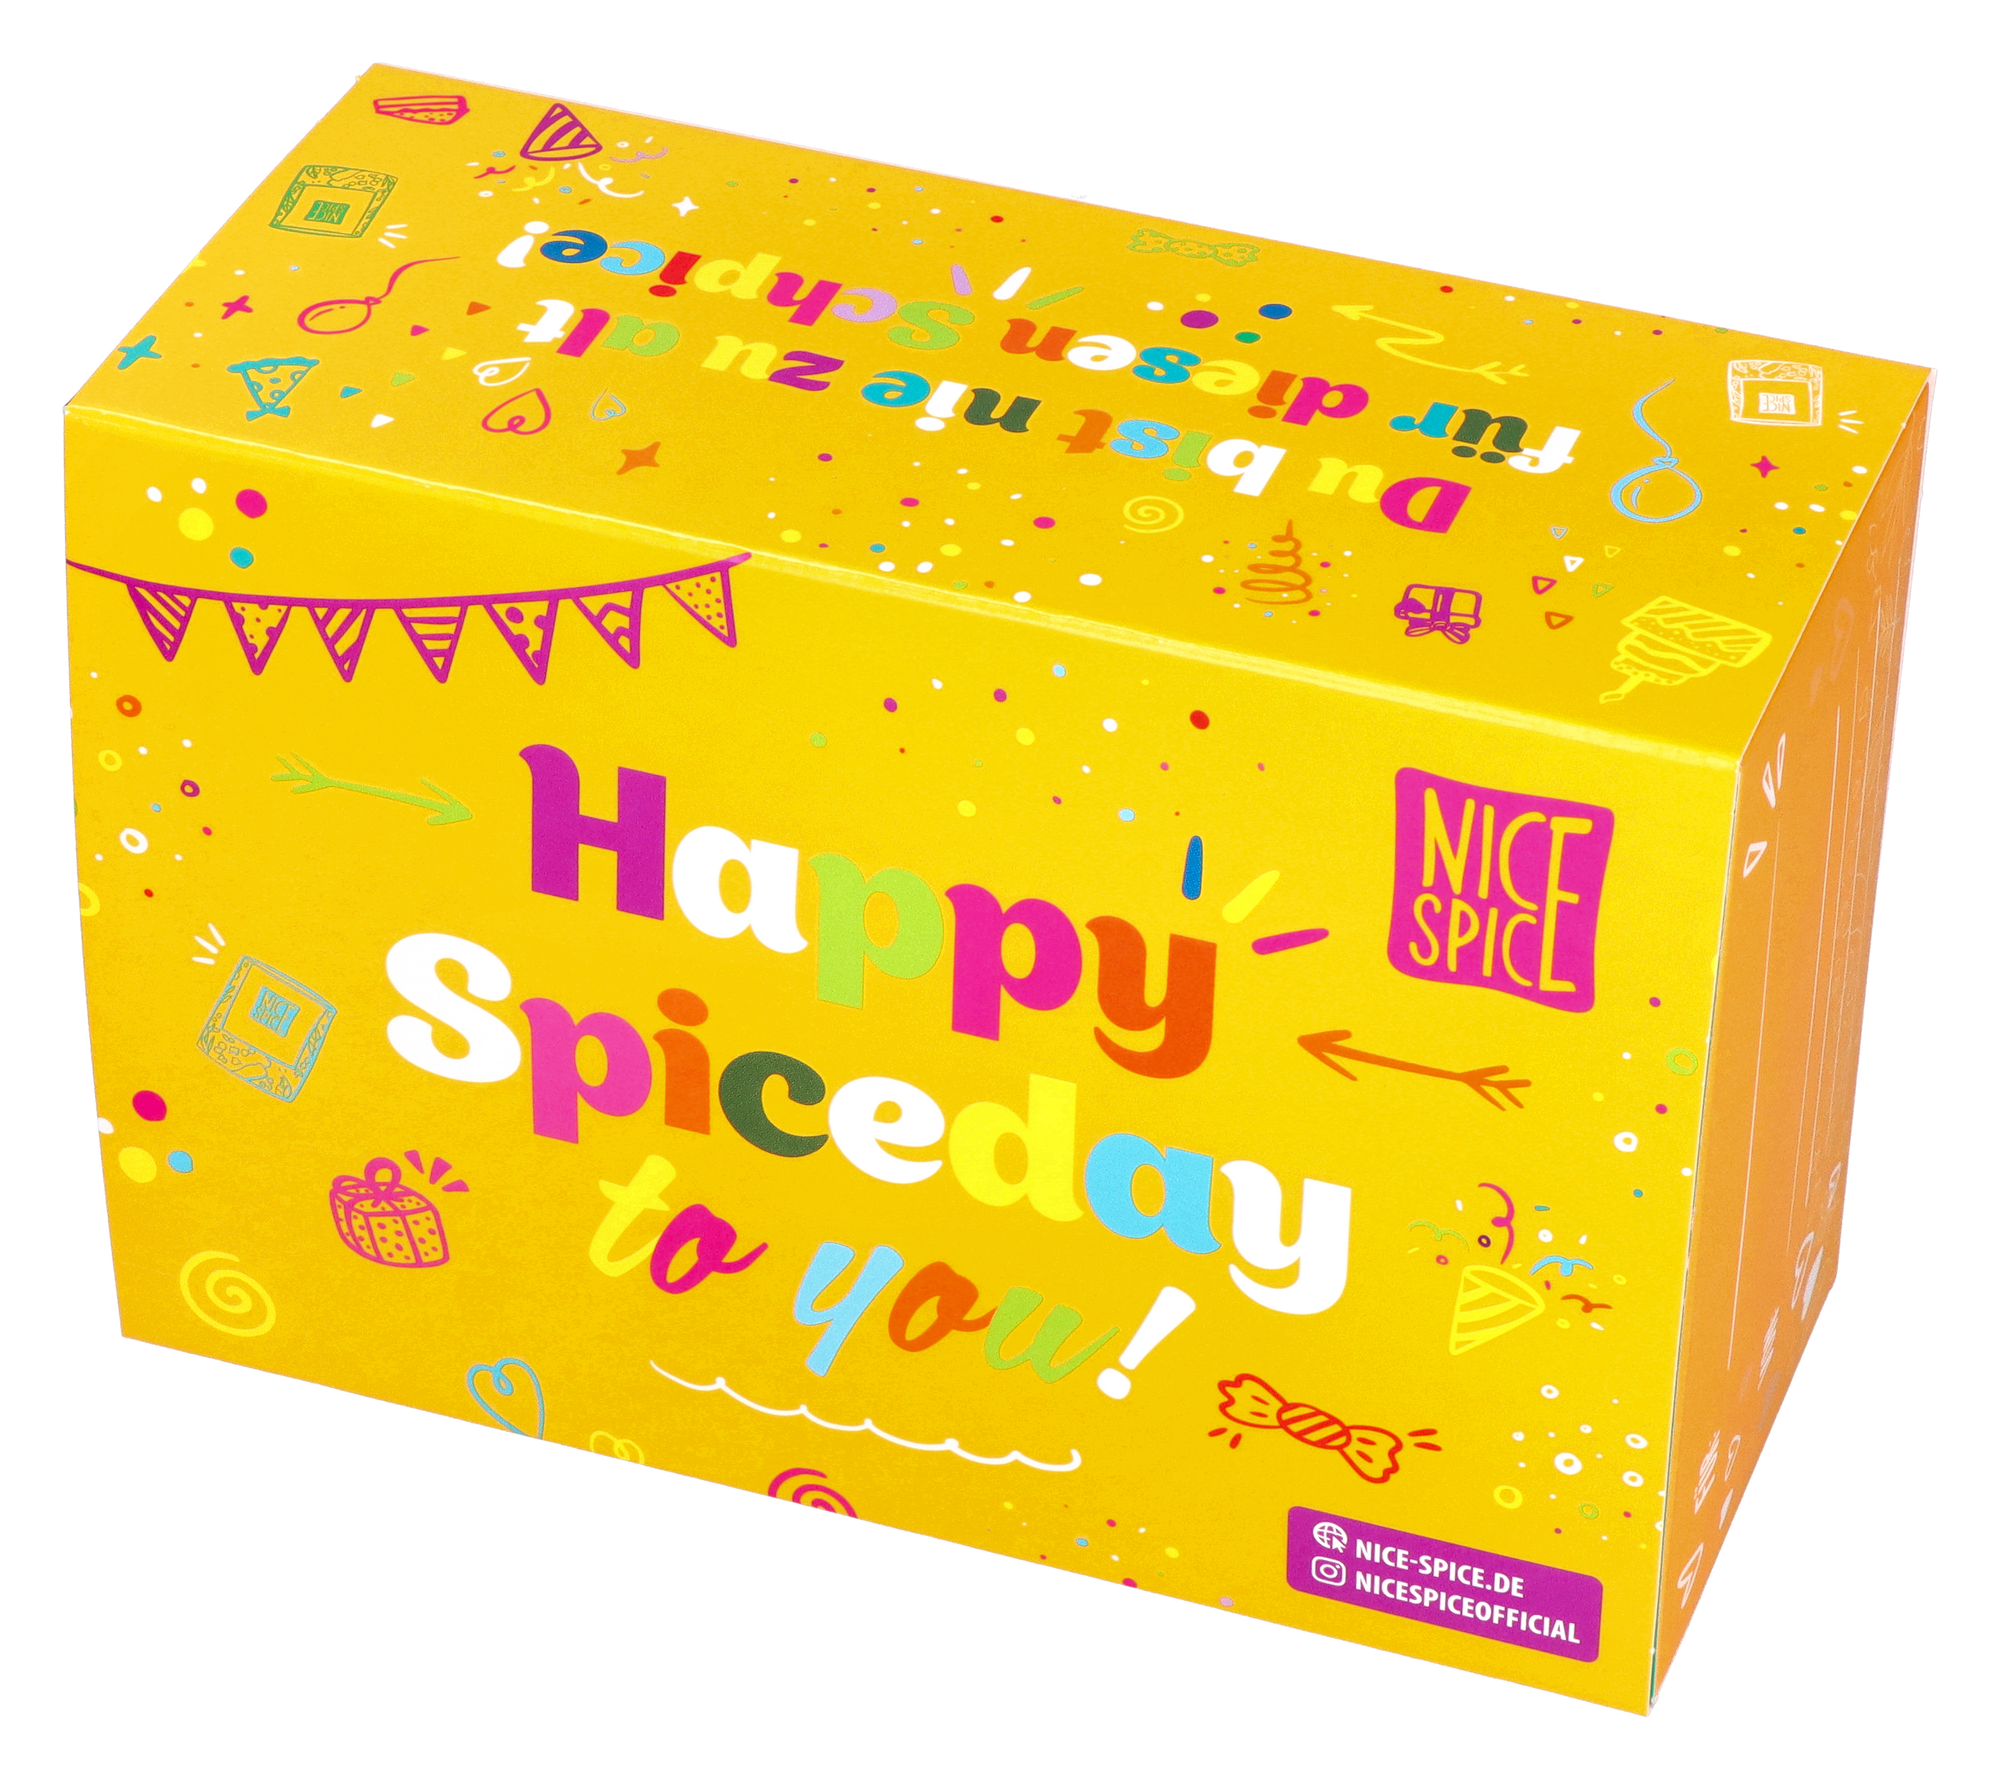 NICE SPICE gelbe Geburtstagsbox leicht nach links gedreht kein Hintergrund